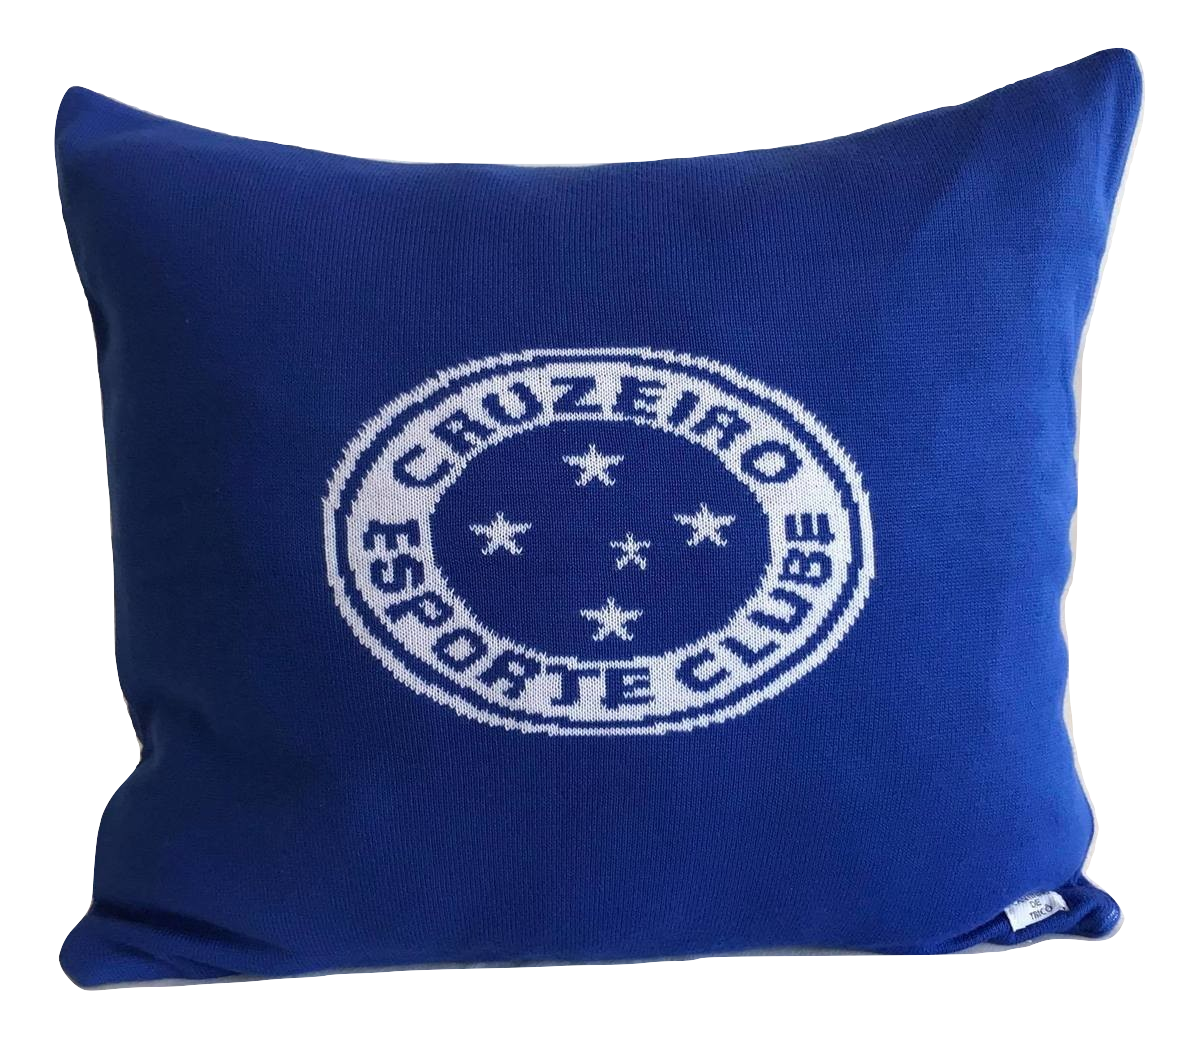 Capa de Almofada Escudo Cruzeiro - Meu Cantinho de Tricô